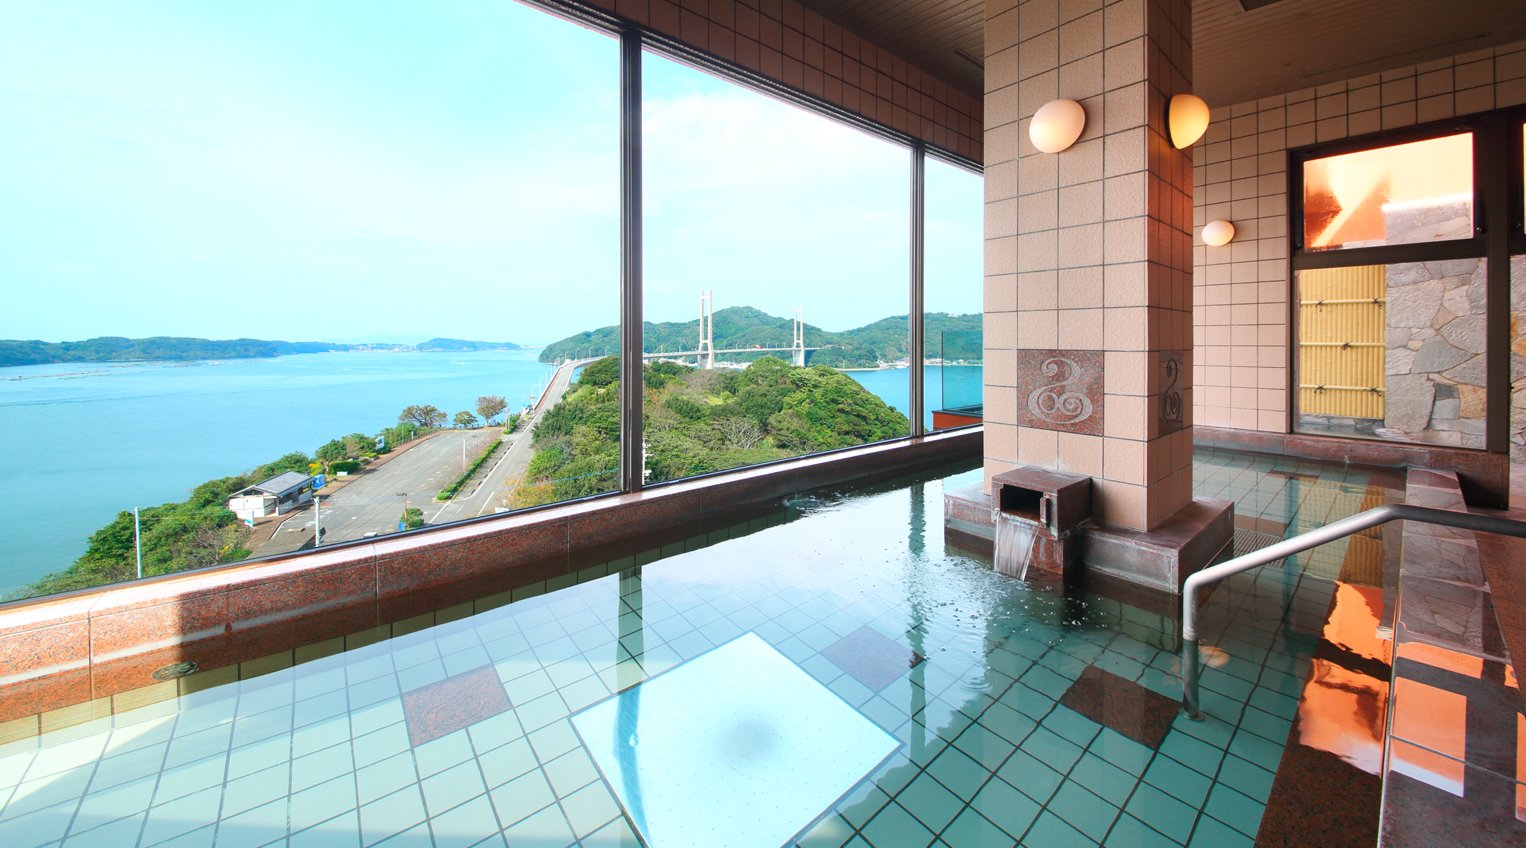 名護屋湾を一望できる展望浴場からの景色はまさに絶景です